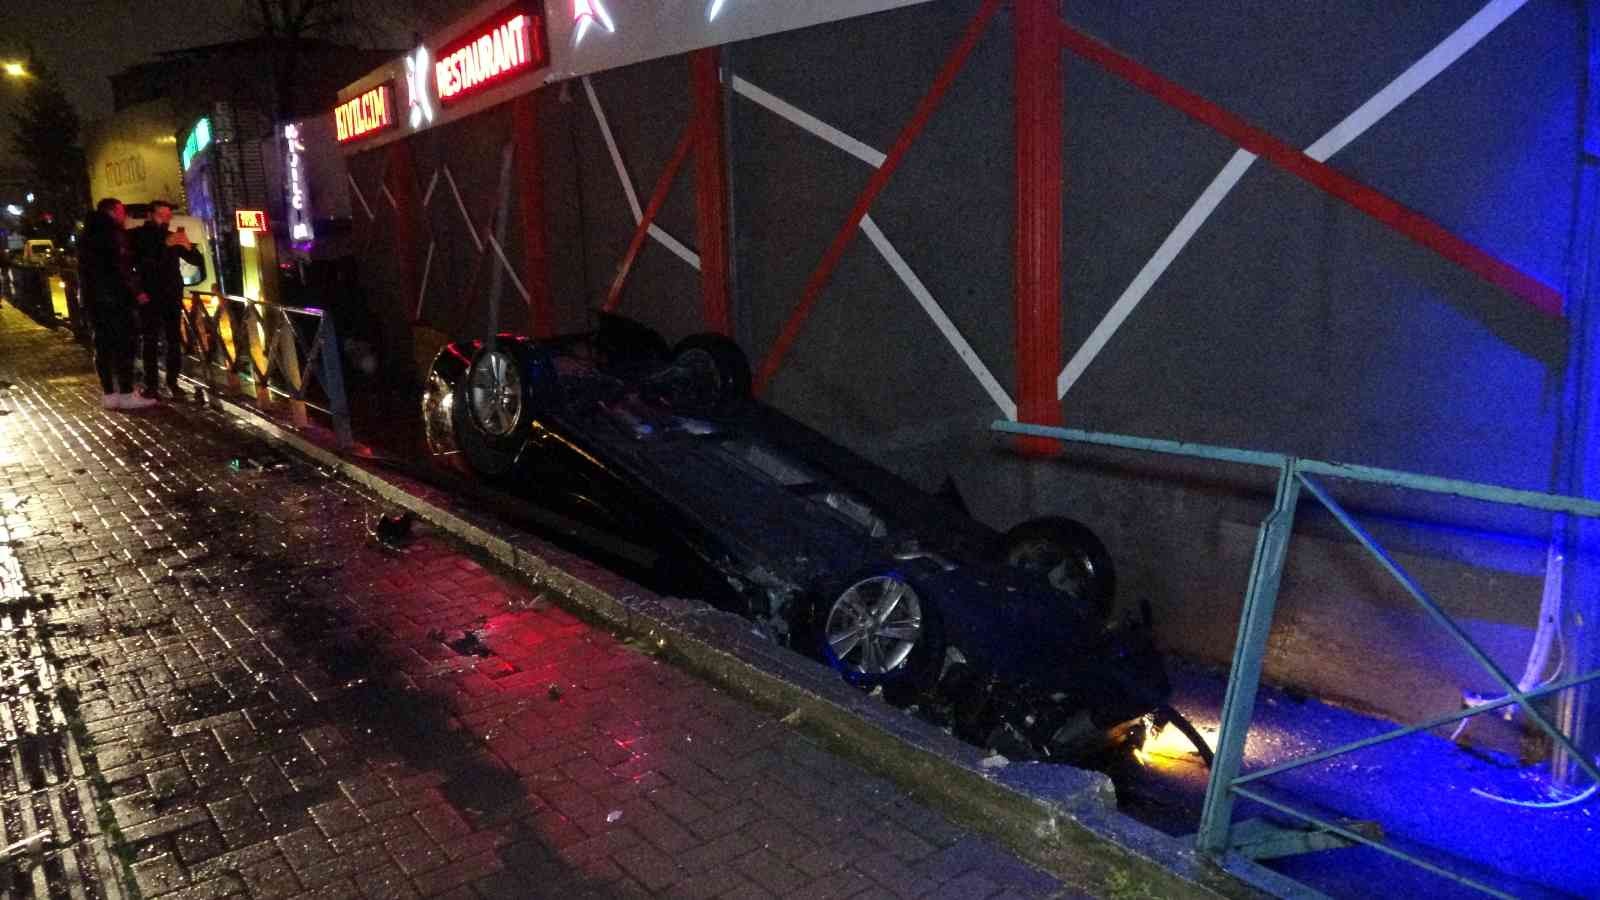 Bursa’da kontrolden çıkan otomobil yan yolu uçtu: 1 ölü, 1 yaralı #bursa